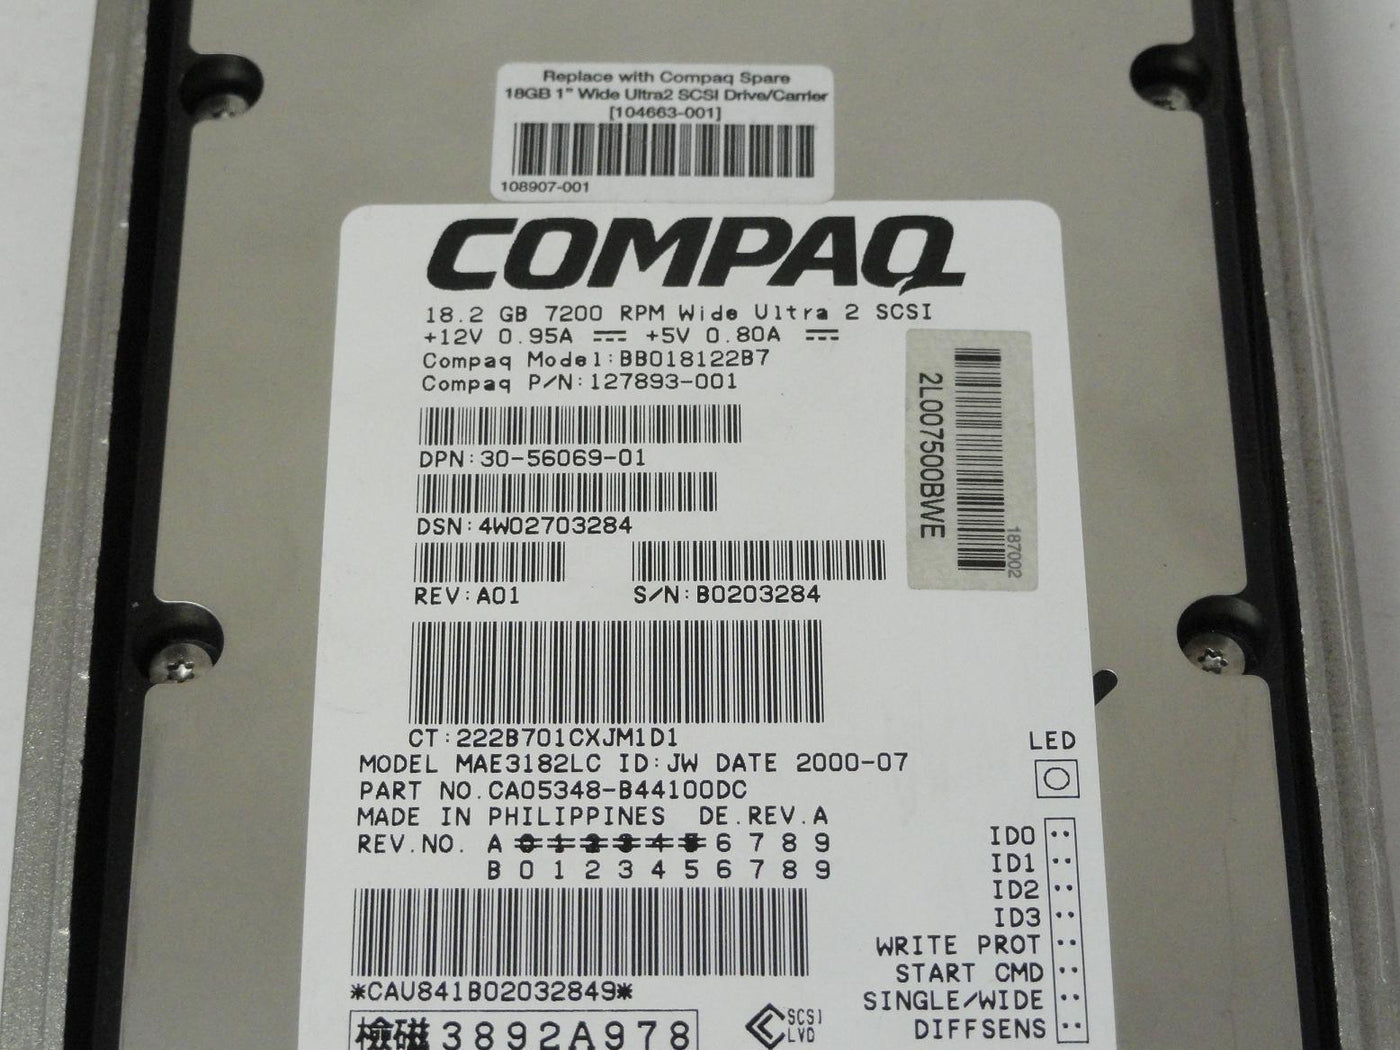 MC6572_CA05348-B44100DC_Fujitsu Compaq 18.2GB SCSI 80 7200rpm 3.5in HDD - Image3